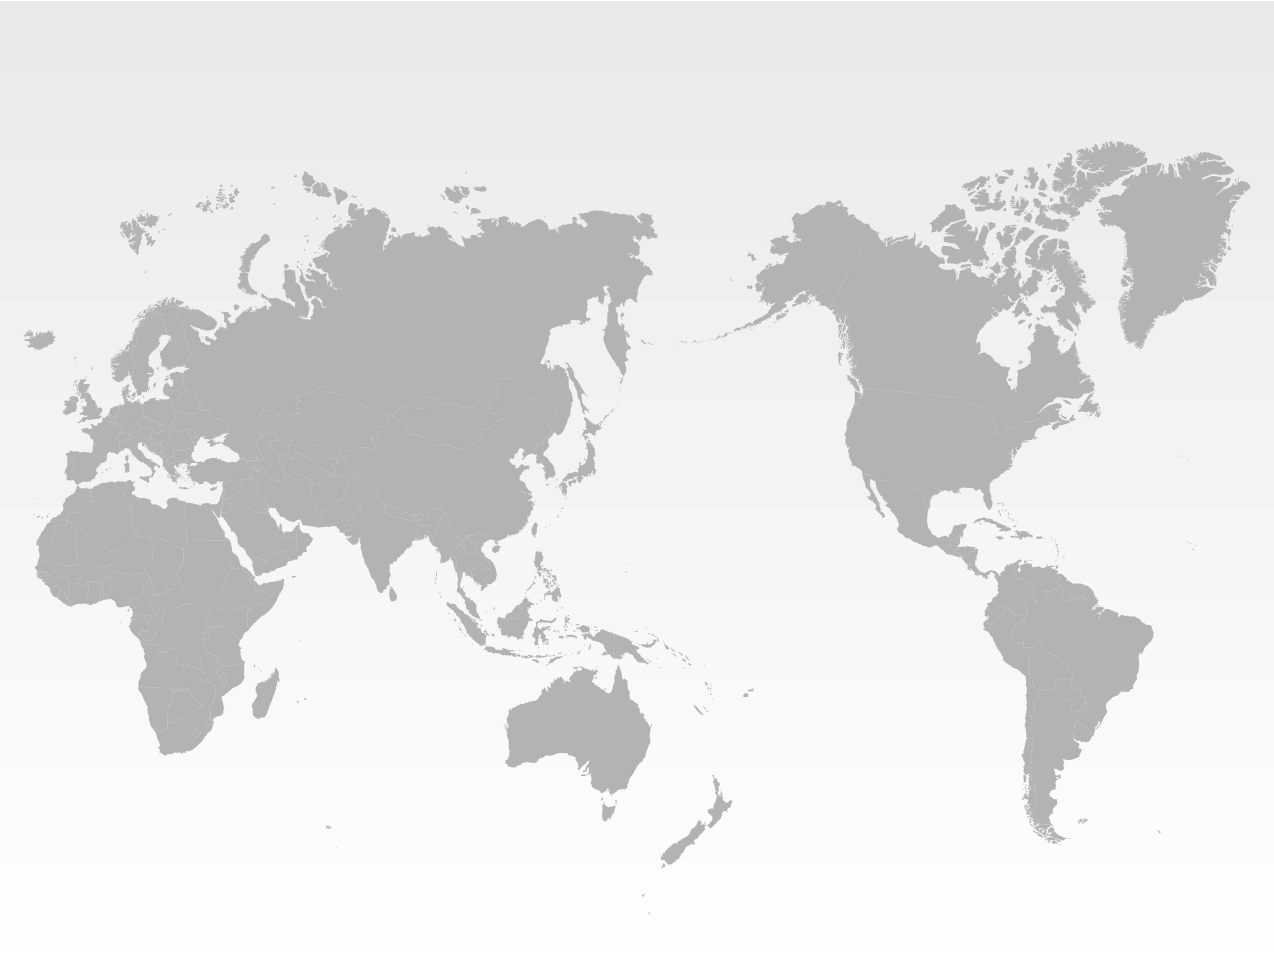 Animated World Map 2020